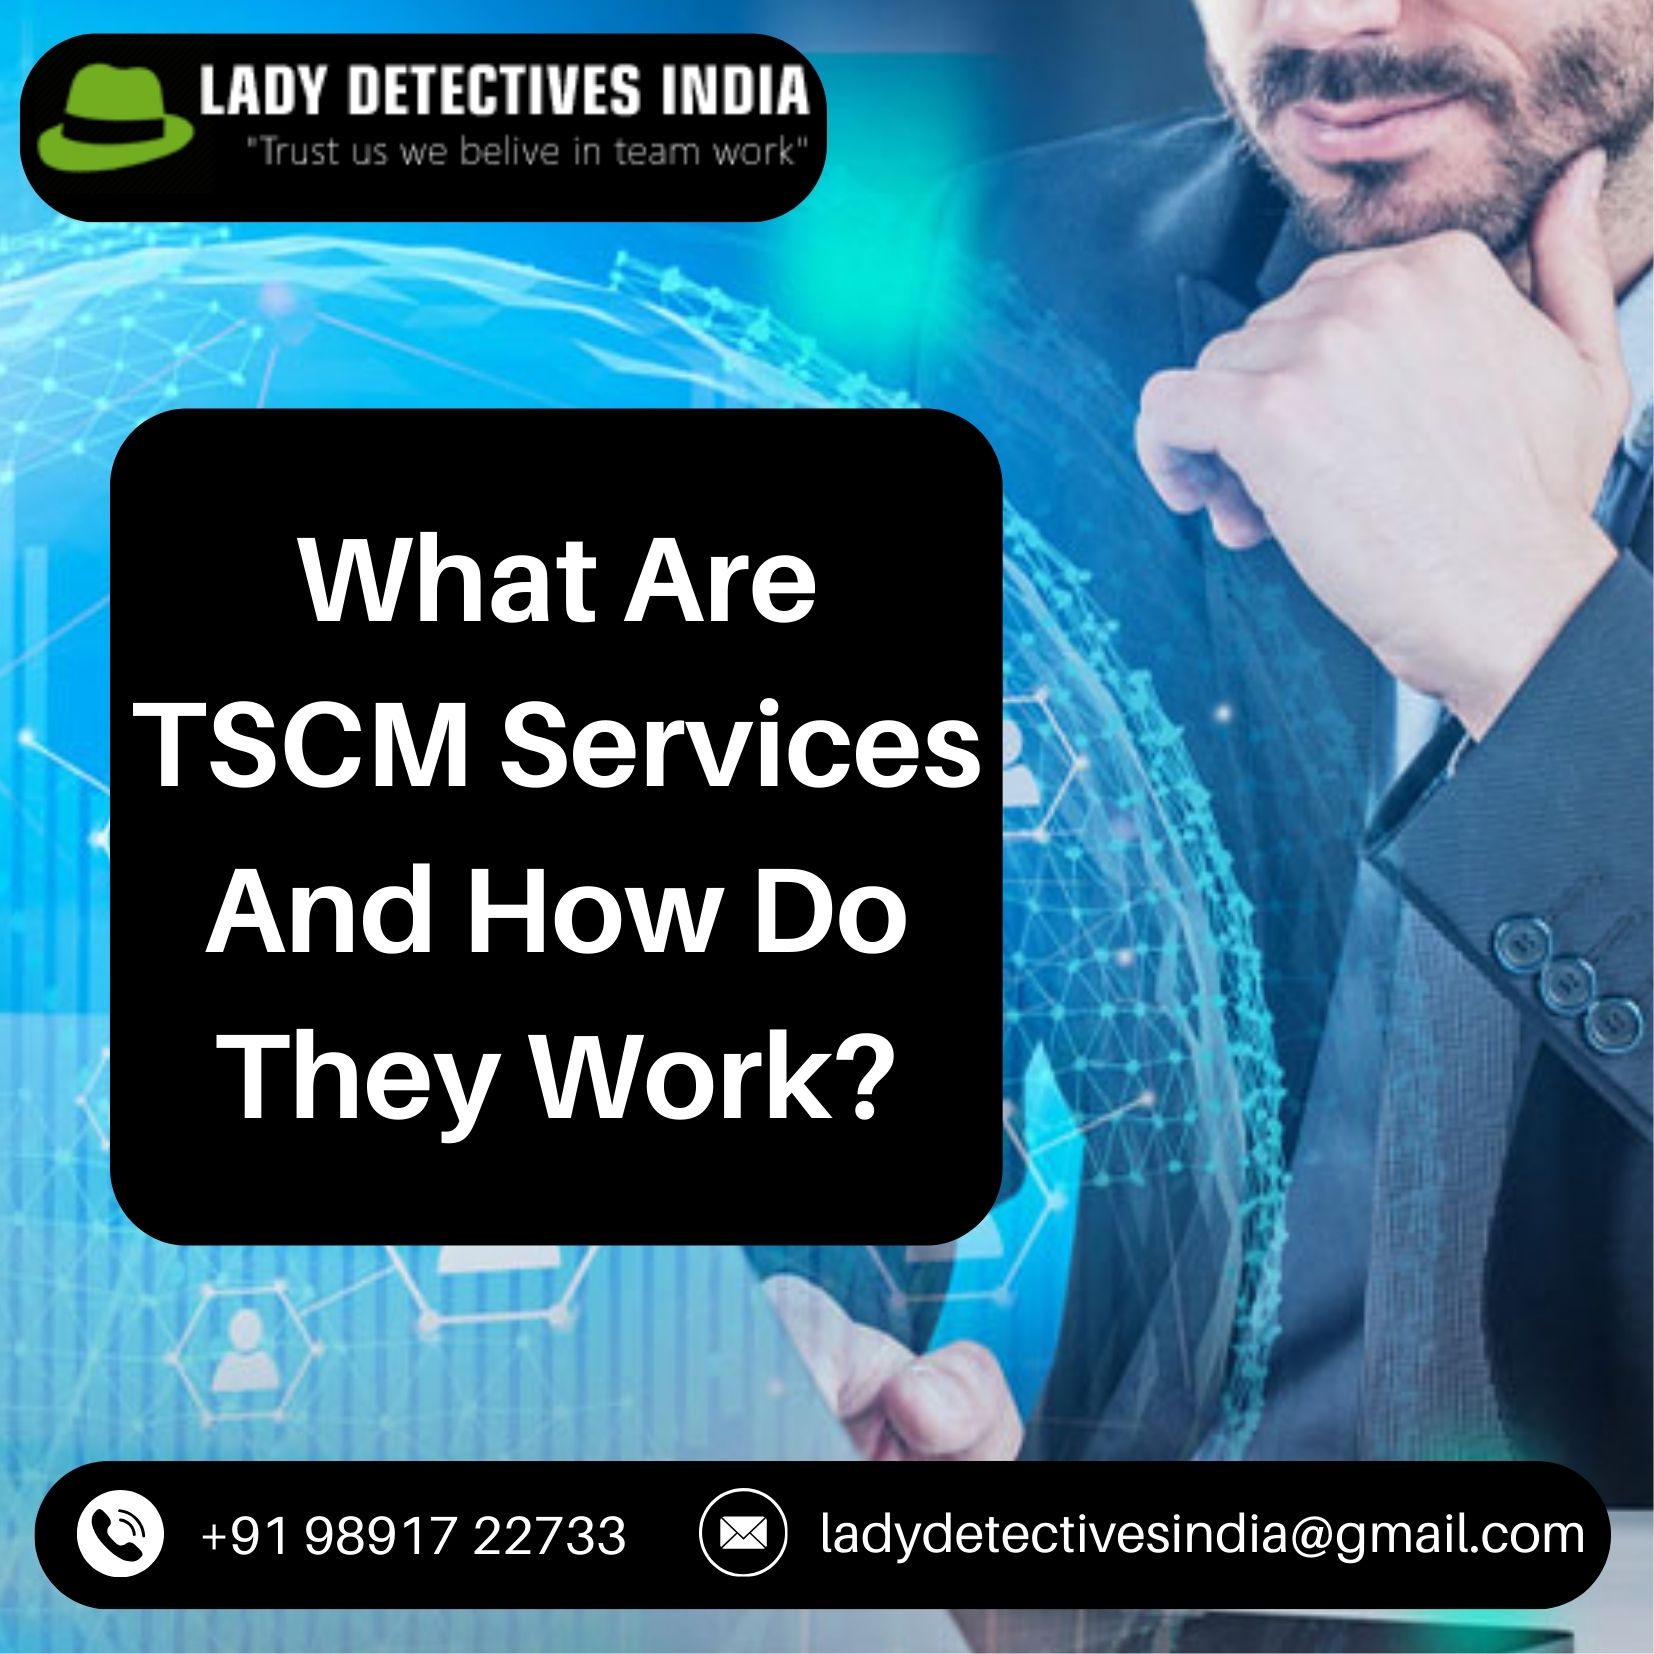 TSCM services